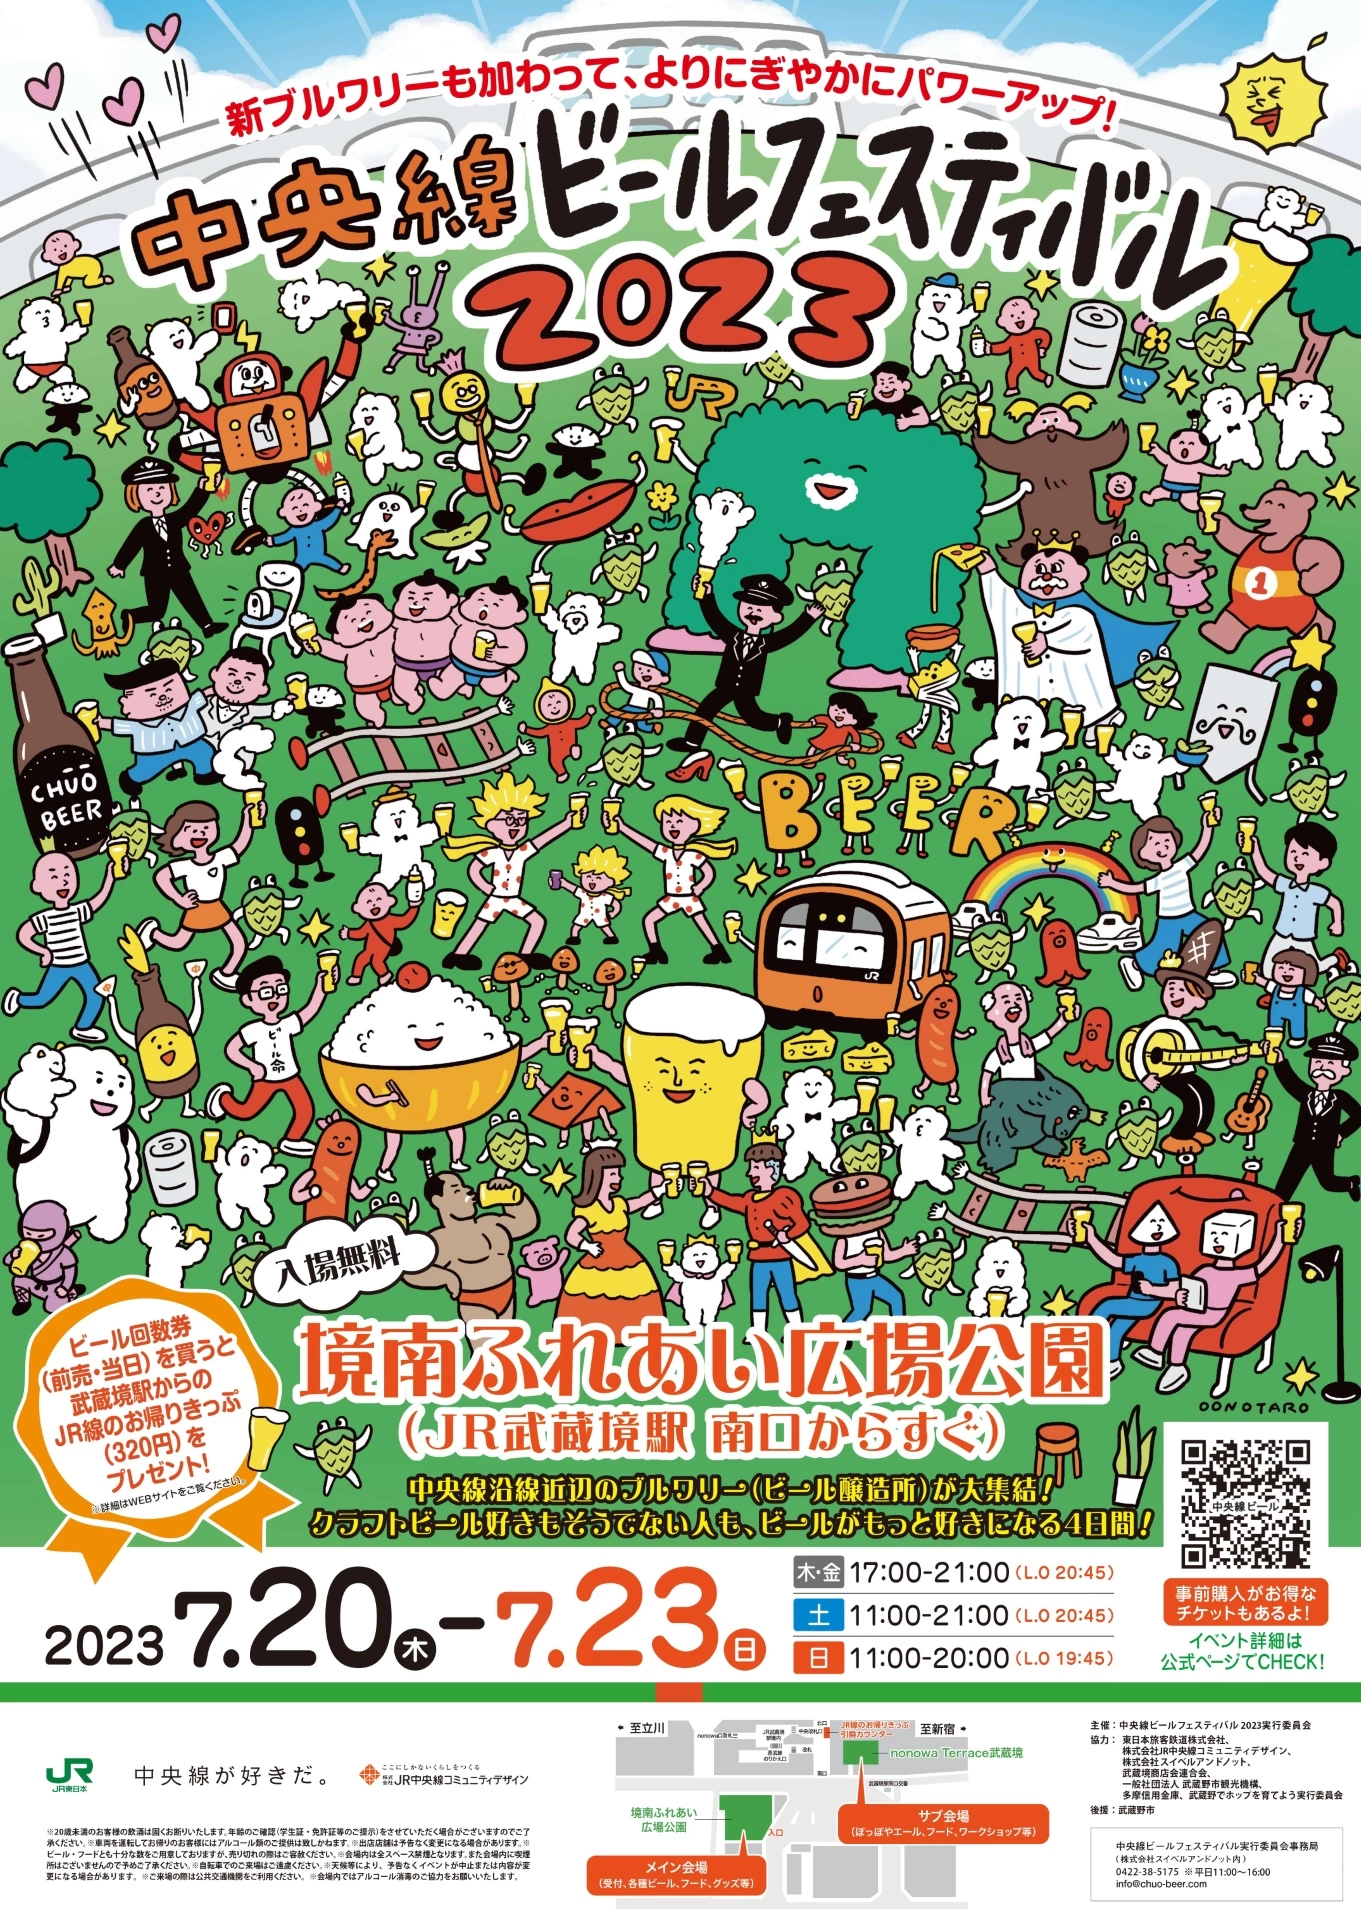 中央線ビールフェスティバル 2023 Summer